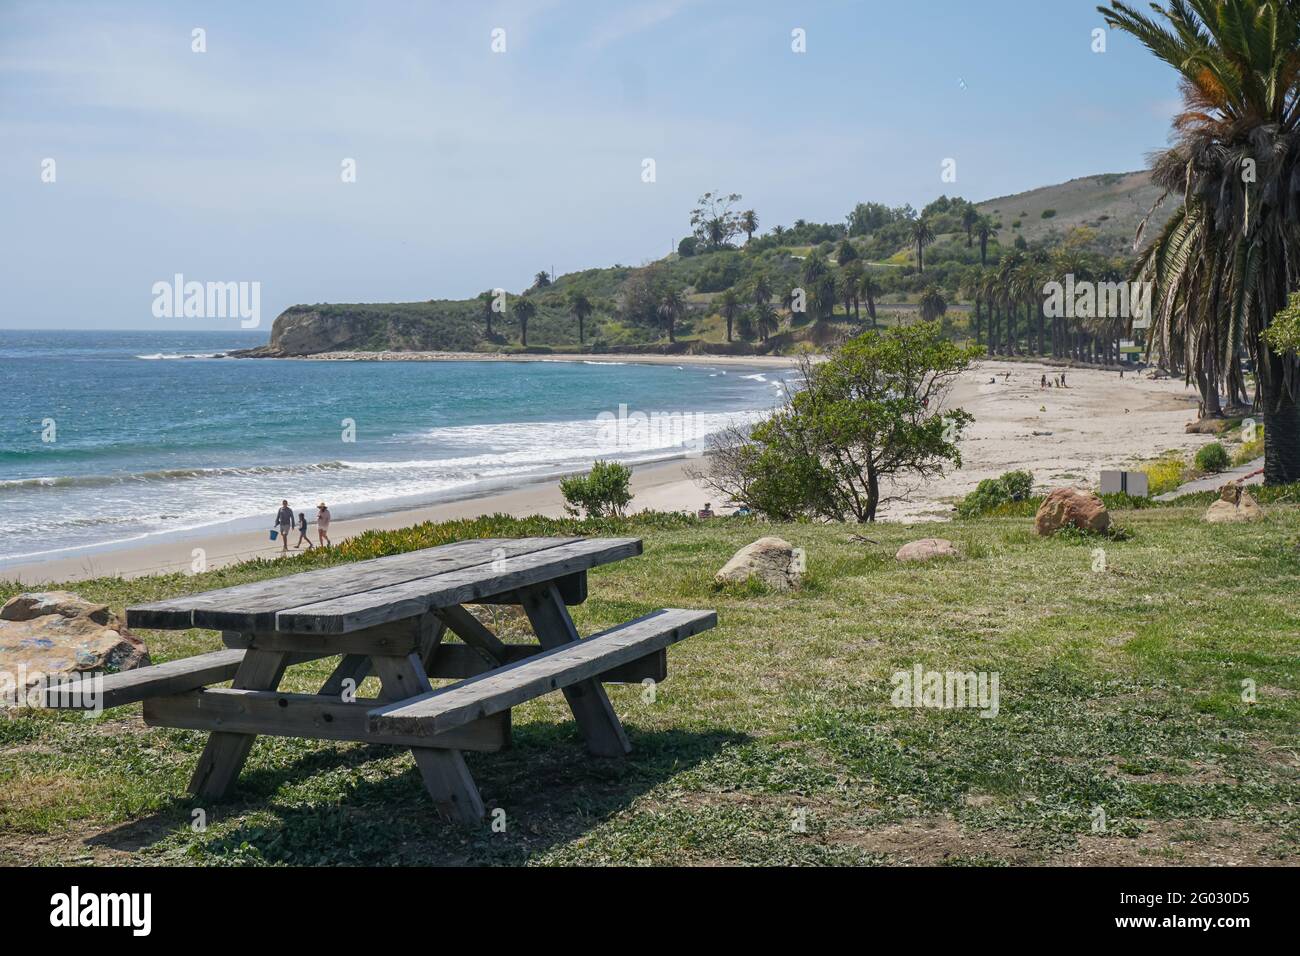 REFUGIO STATE BEACH, CALIFORNIA, STATI UNITI - 14 aprile 2021: Un tavolo da picnic siede su un pittoresco promontorio sopra Refugio state Beach a Santa Barbara Co Foto Stock